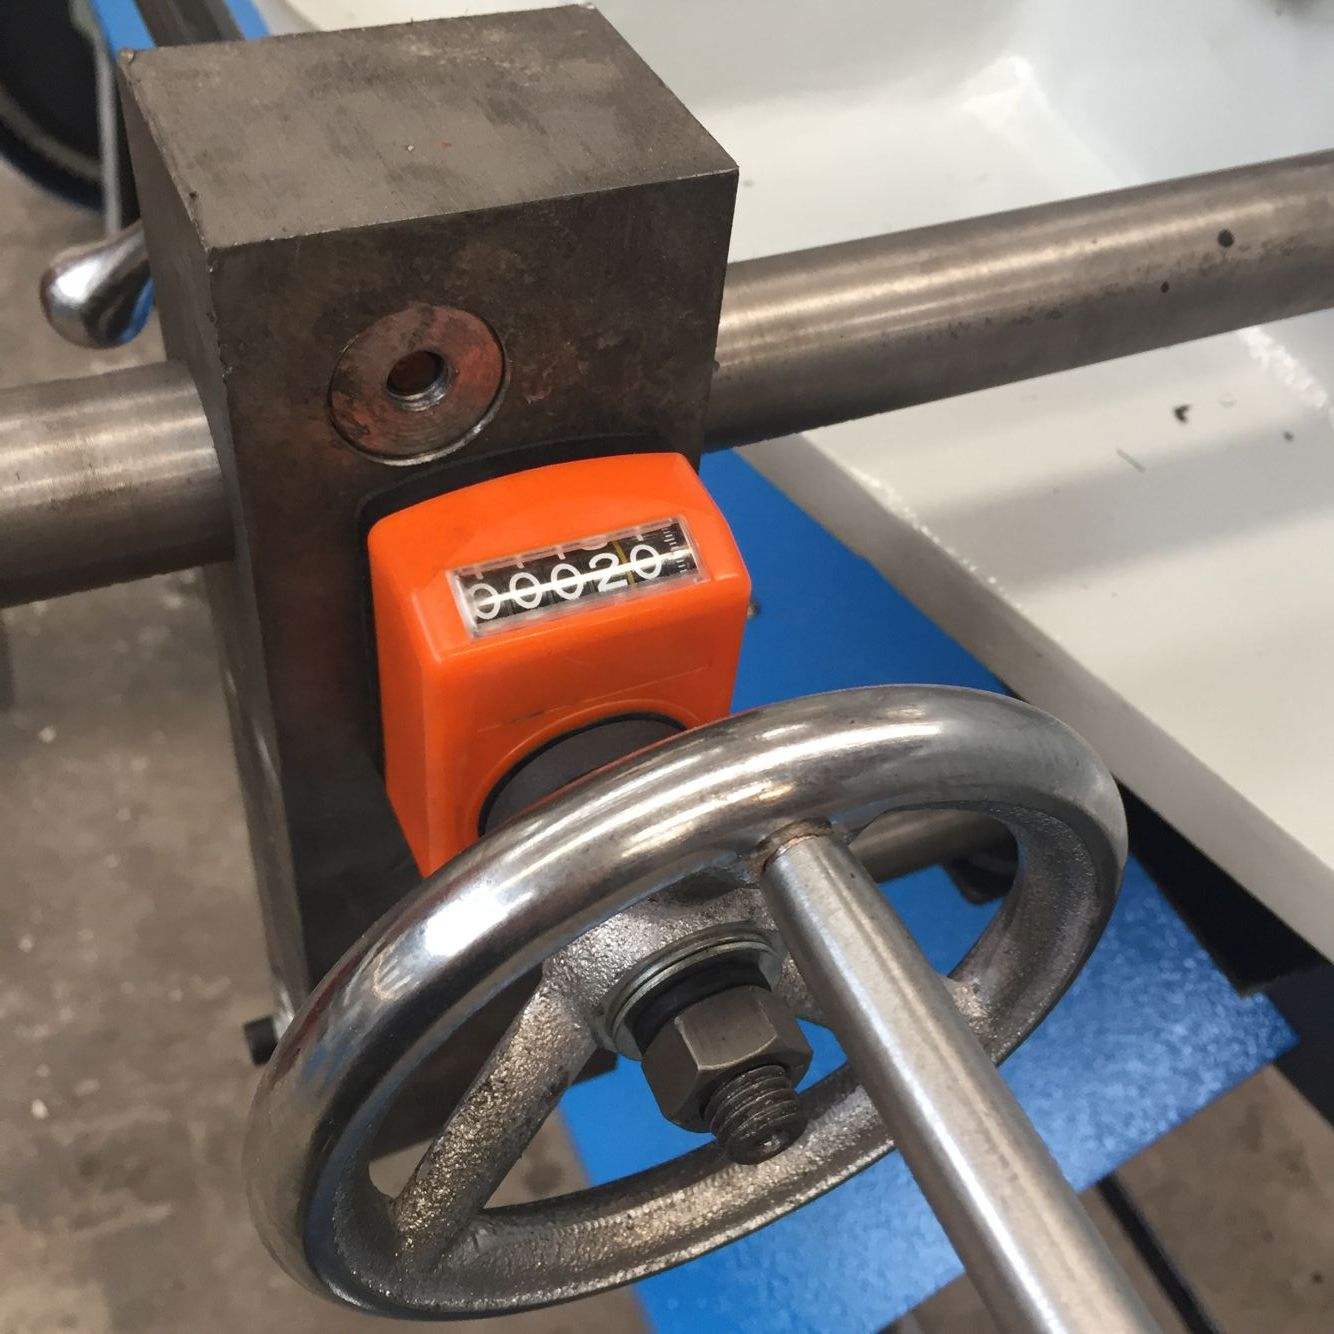 QB11-3*1300 guillotine  shearing  cutting  machine for metal  sheet